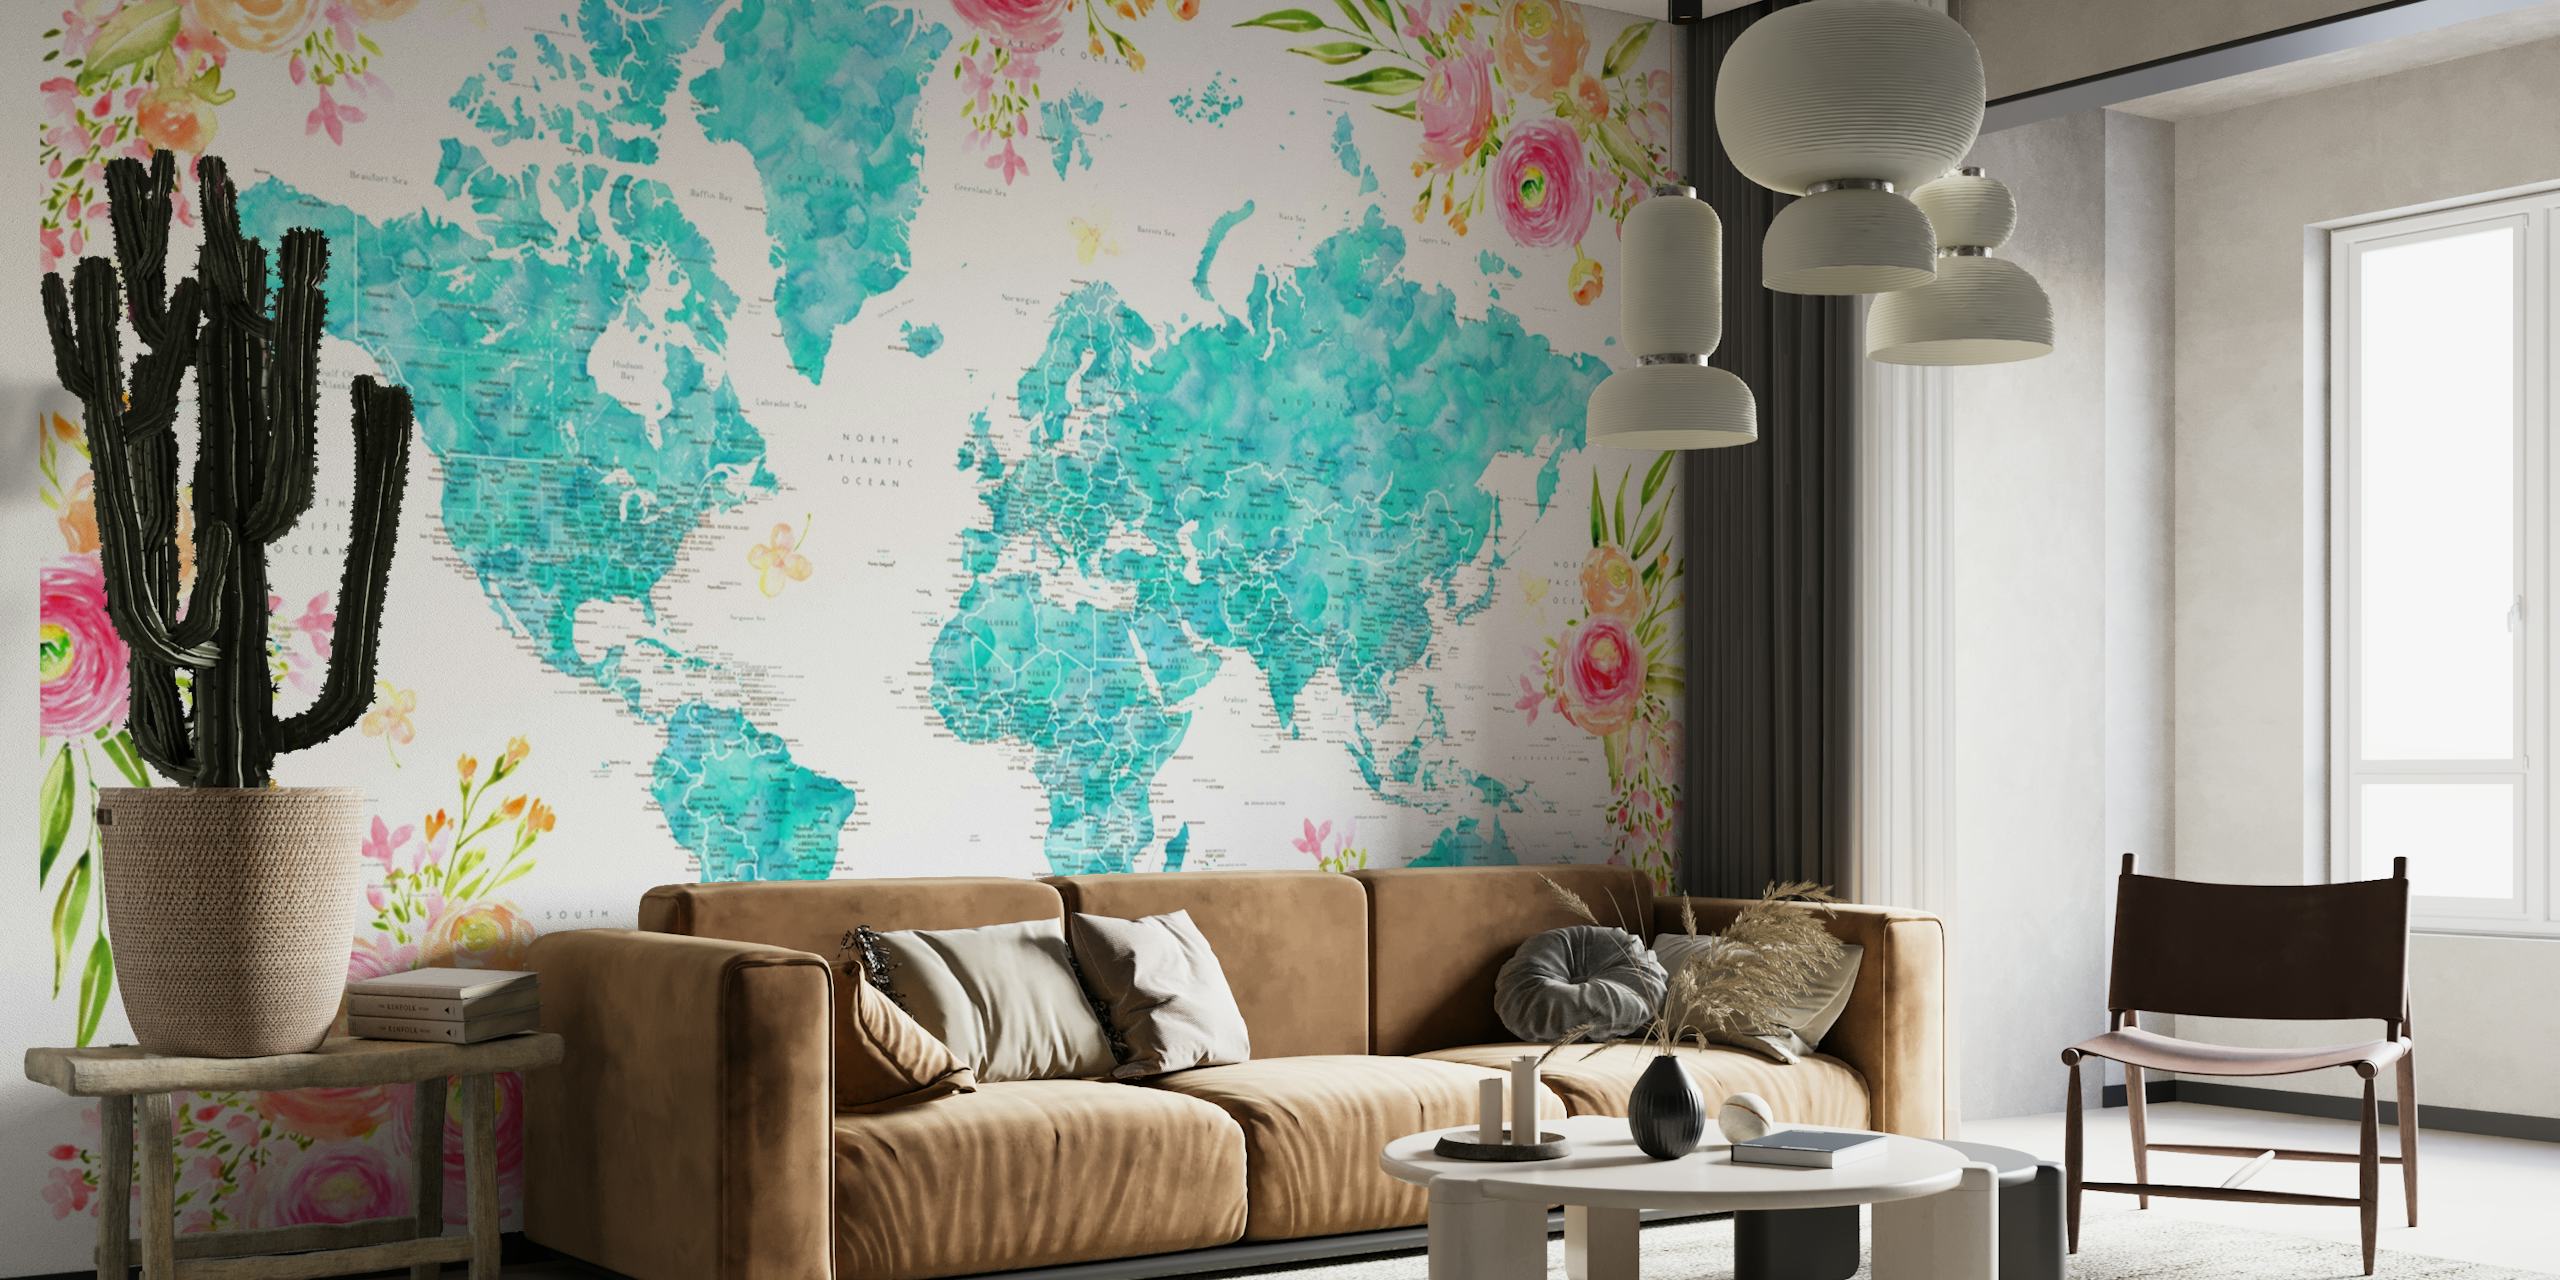 Detaljert verdenskart med blomsterkanter i turkis og pastellfarger på et veggmaleri.